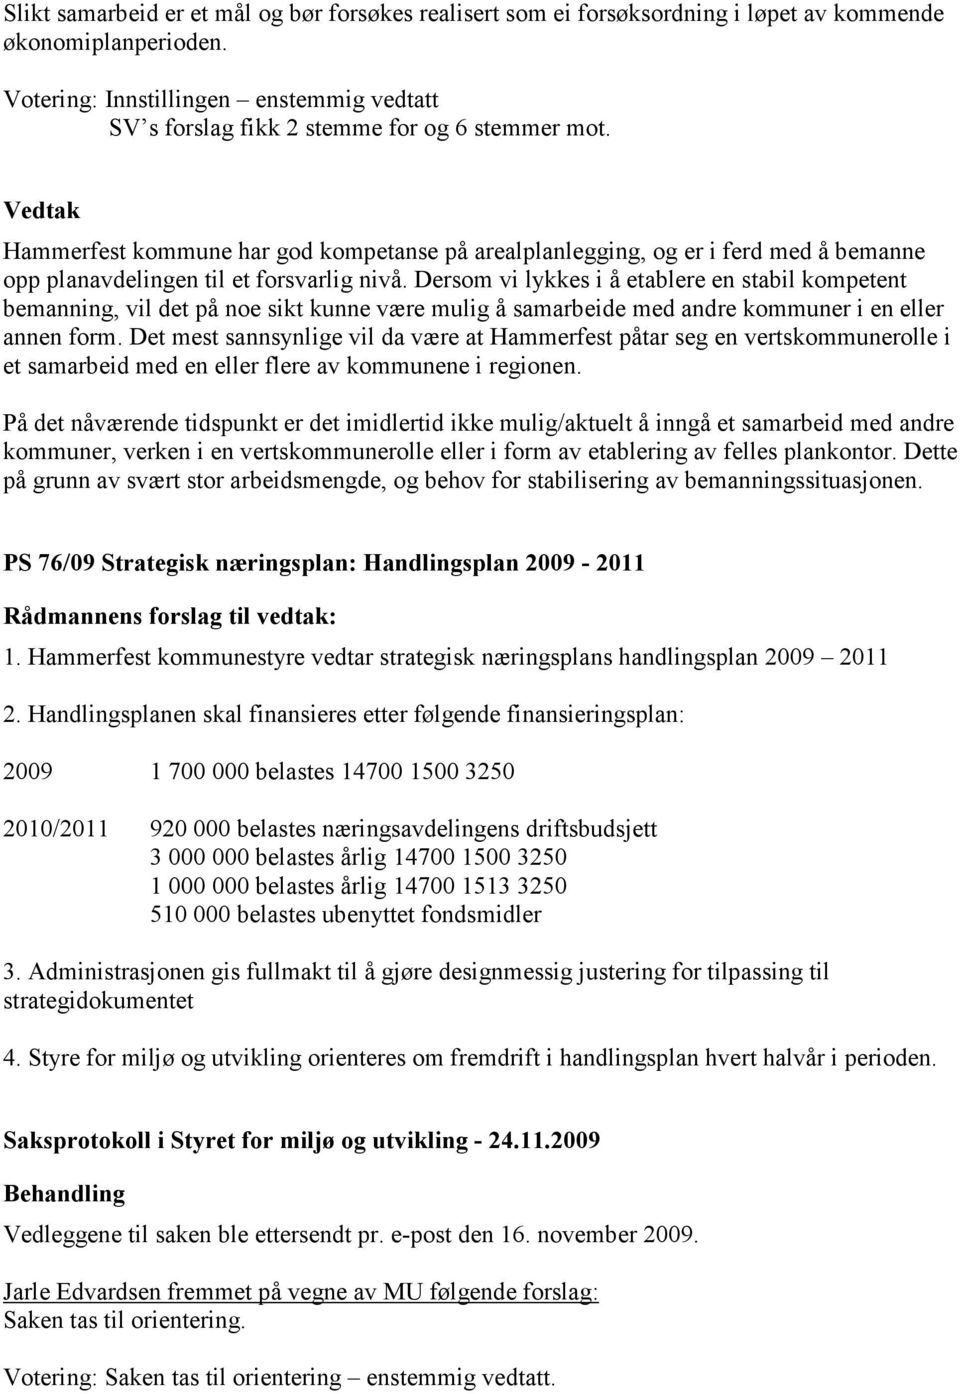 Hammerfest kommune har god kompetanse på arealplanlegging, og er i ferd med å bemanne opp planavdelingen til et forsvarlig nivå.